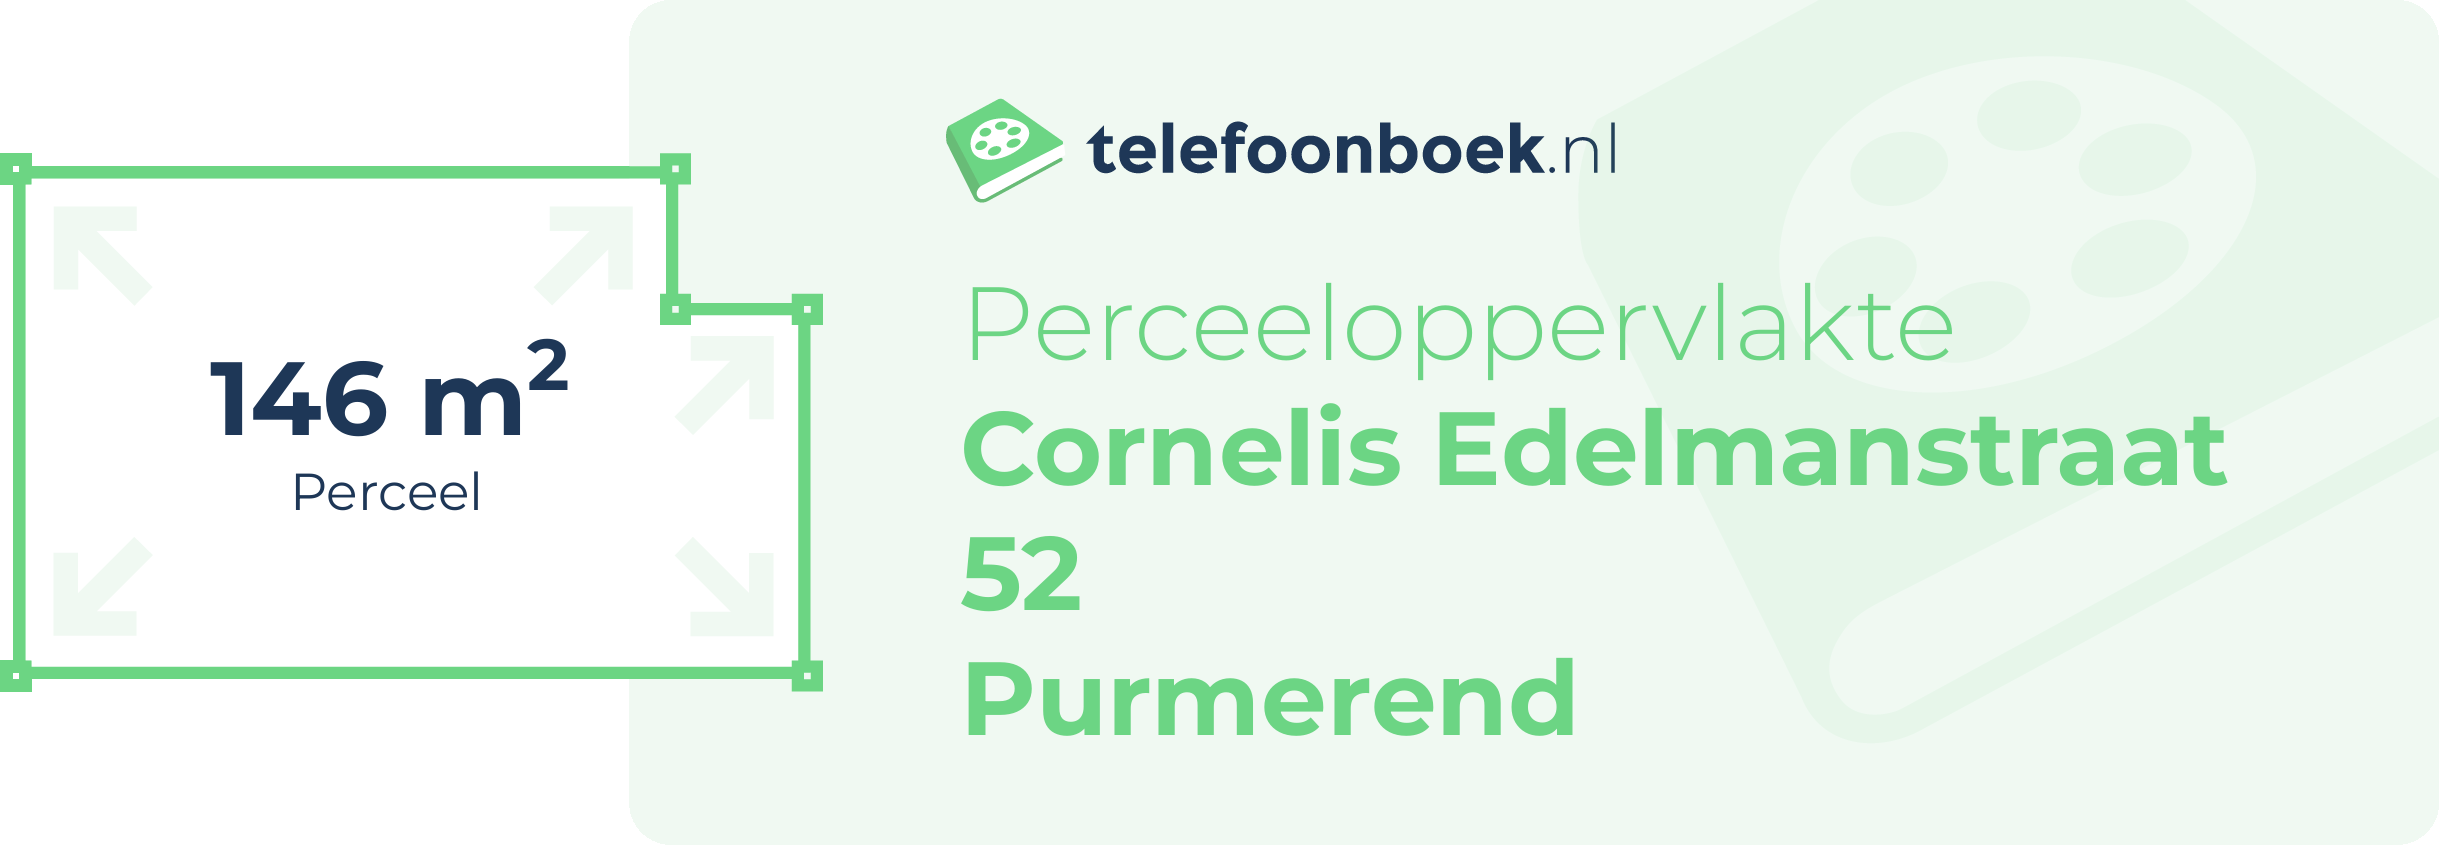 Perceeloppervlakte Cornelis Edelmanstraat 52 Purmerend